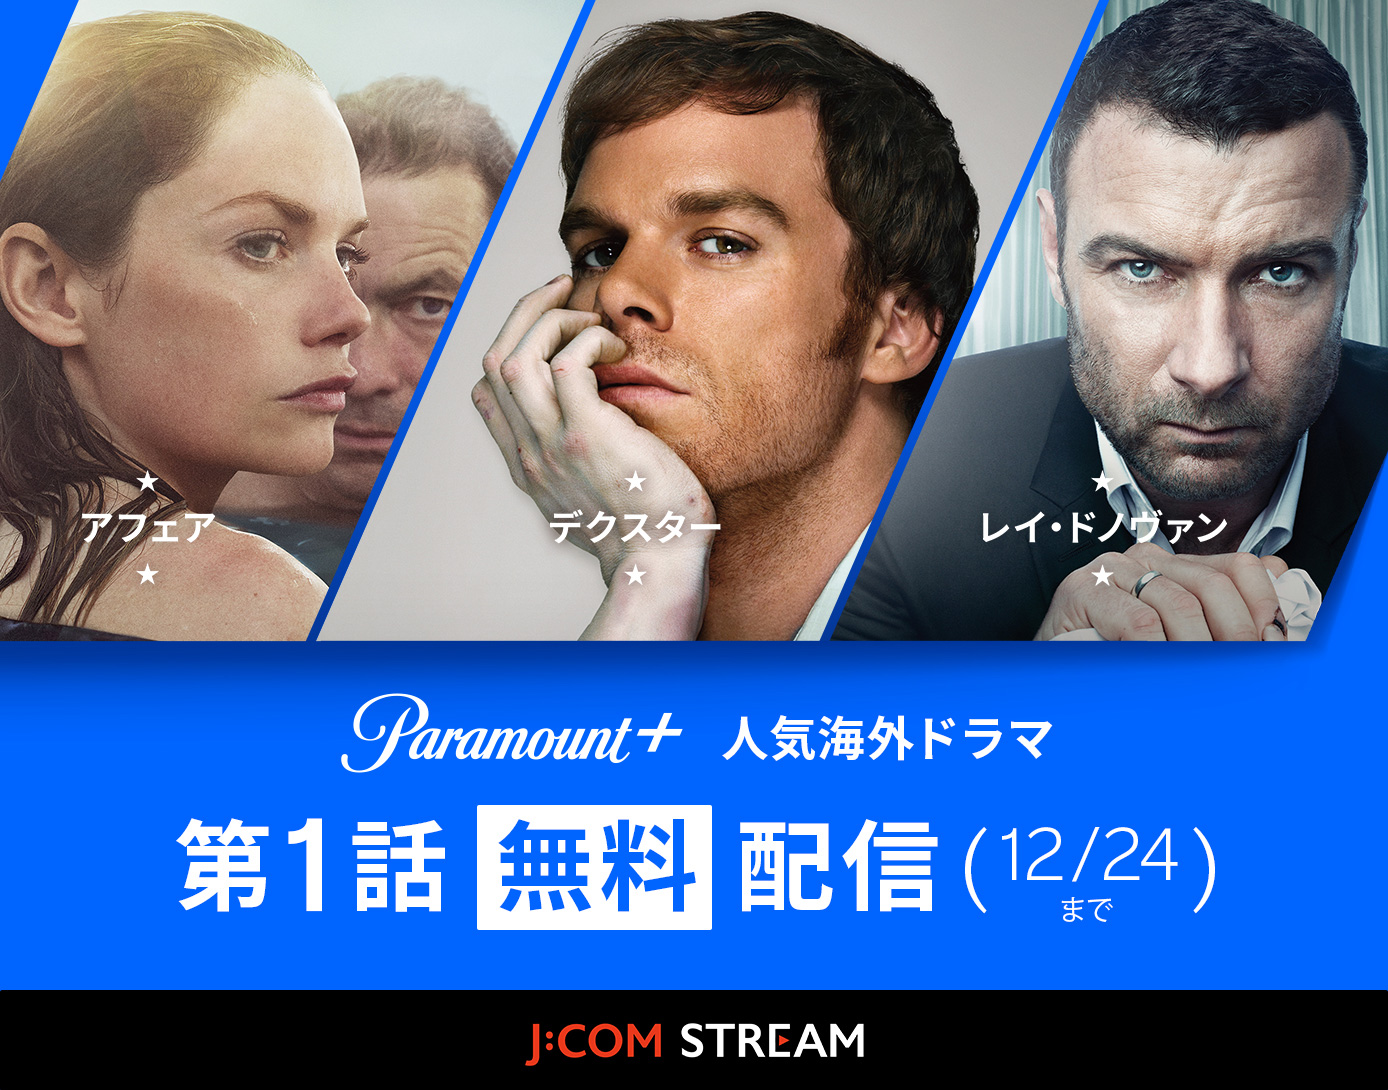 【公式】パラマウントプラス第1話無料配信 海外ドラマ - J:COM STREAM